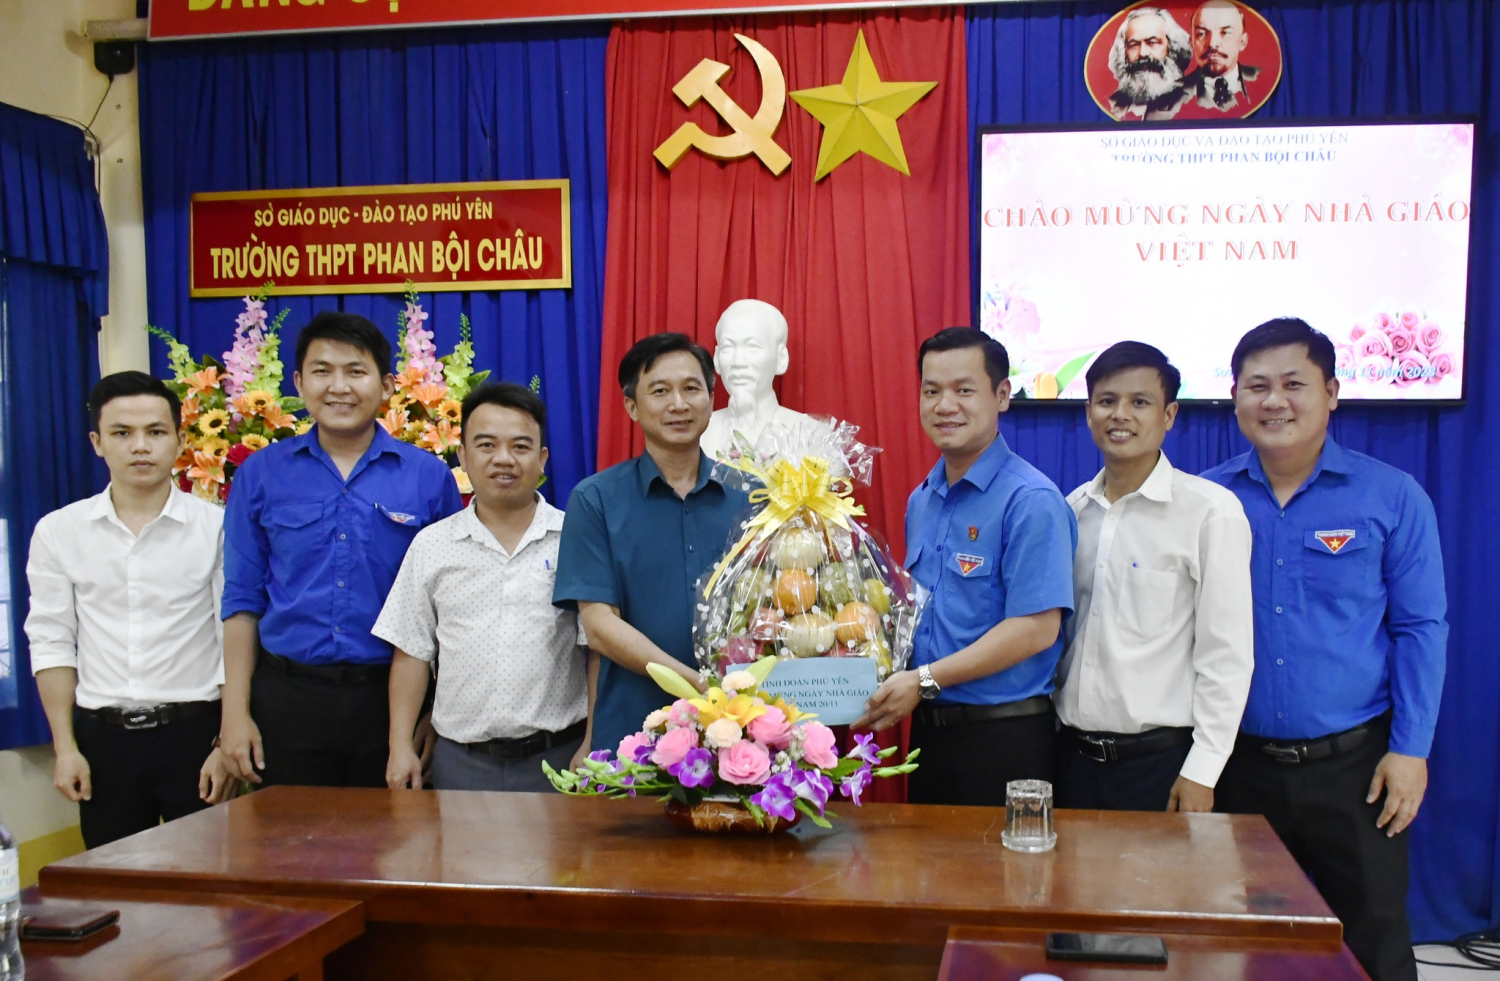 Đồng chí Võ Duy Kha Chúc mừng thầy cô Trường trung học phổ thông Phan Bội Châu.